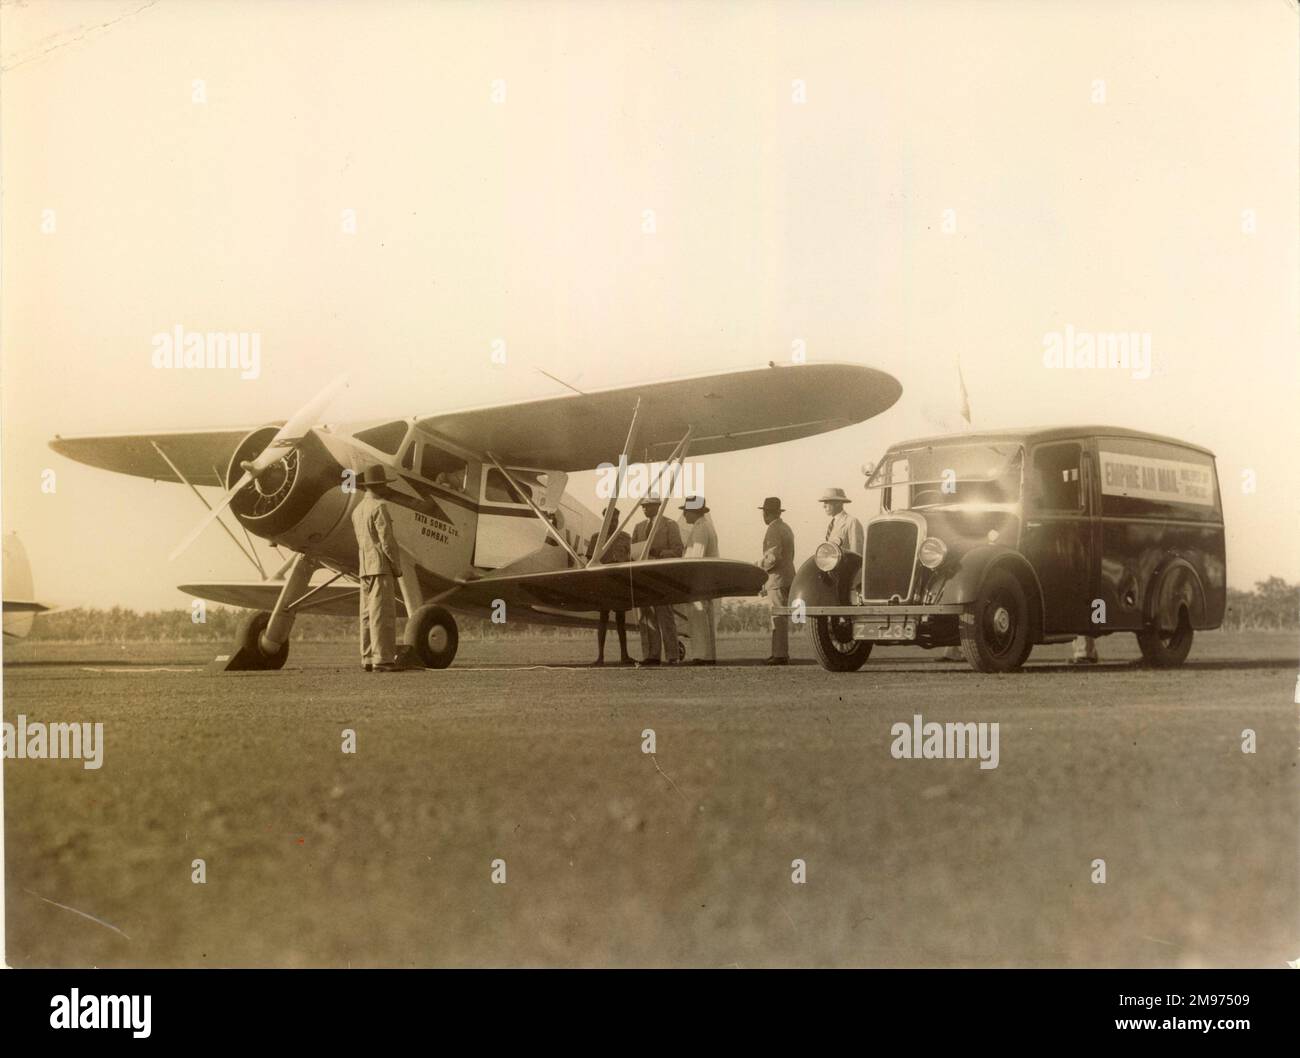 Départ de l'aérodrome de Ratmanala, Colombo, du premier service Empire Air Mail, 28 février 1938. Transporté par un biplan Waco YQC-6 exploité par Tata Air Lines, le service de 1 900 milles transportait du courrier de Colombo à Karachi. Banque D'Images